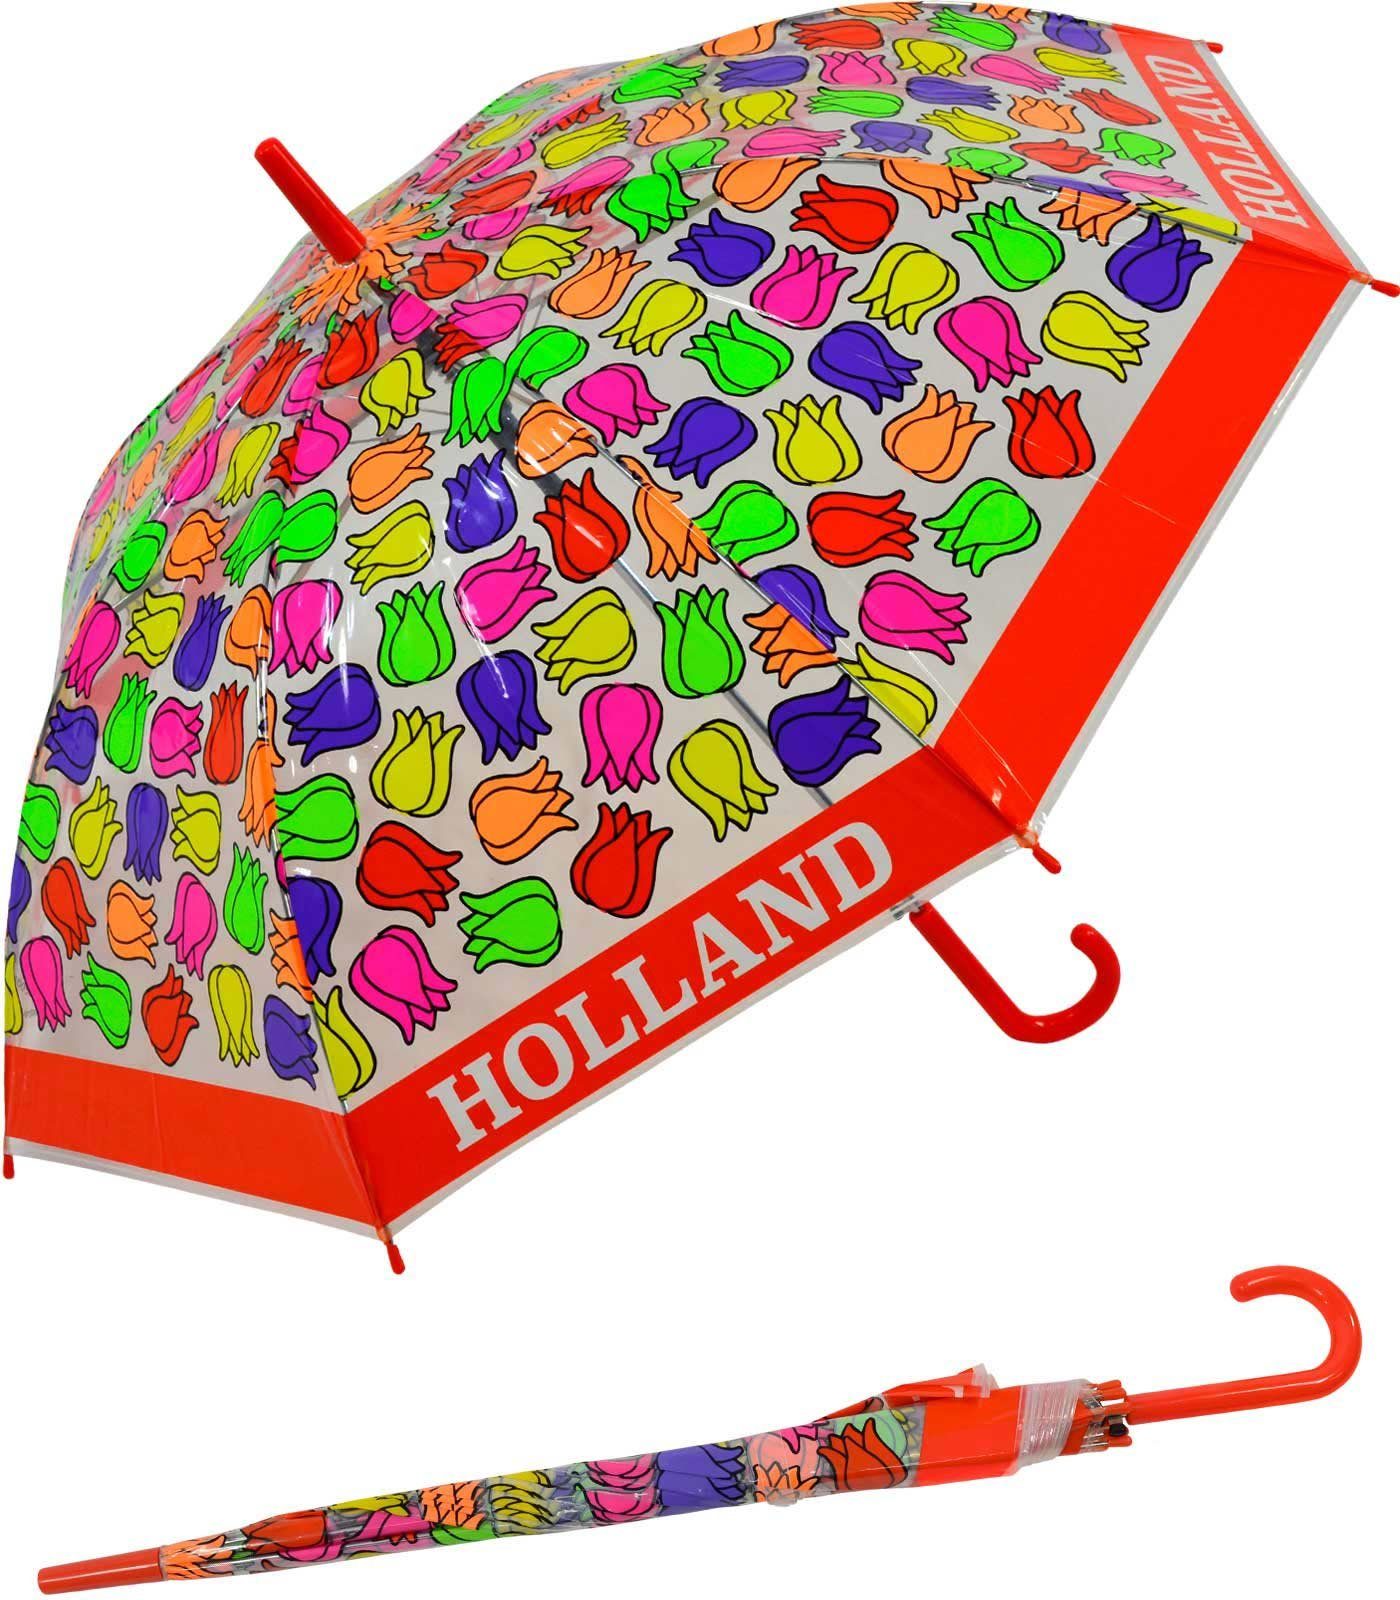 Impliva Langregenschirm Falconetti Kinderschirm bunt transparent - Tulpen, durchsichtig